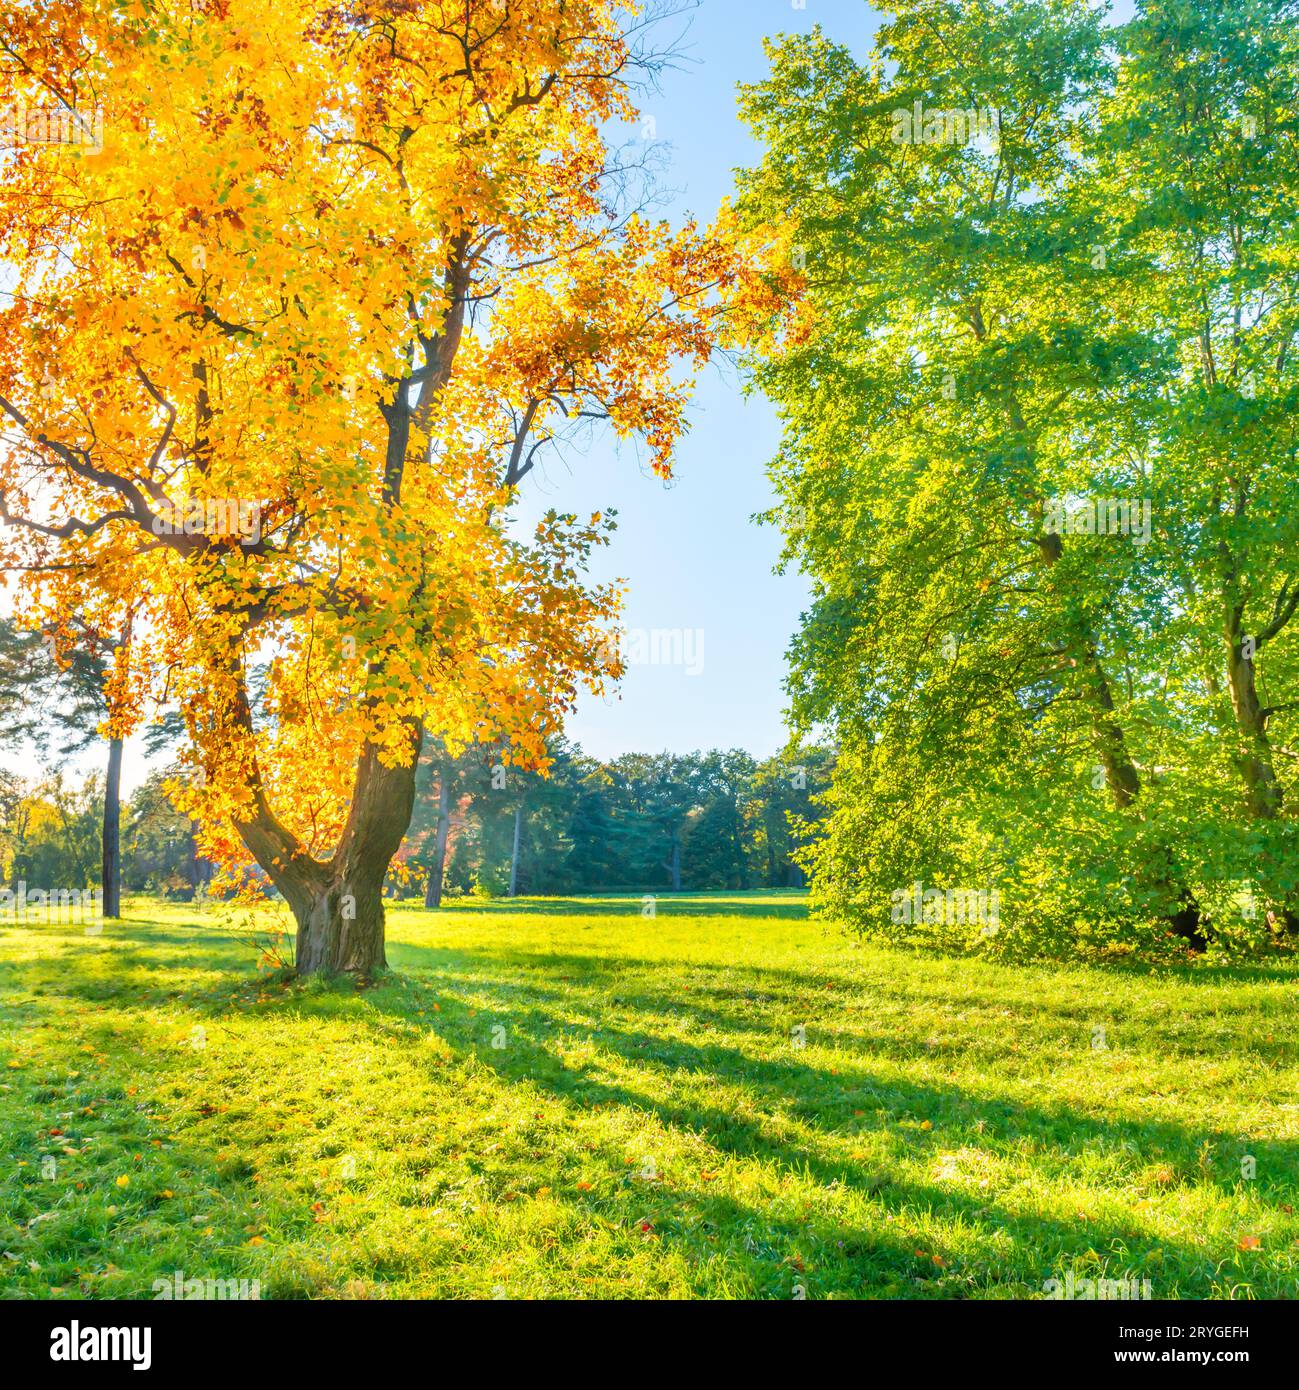 Yellow autumn tree on green field Stock Photo